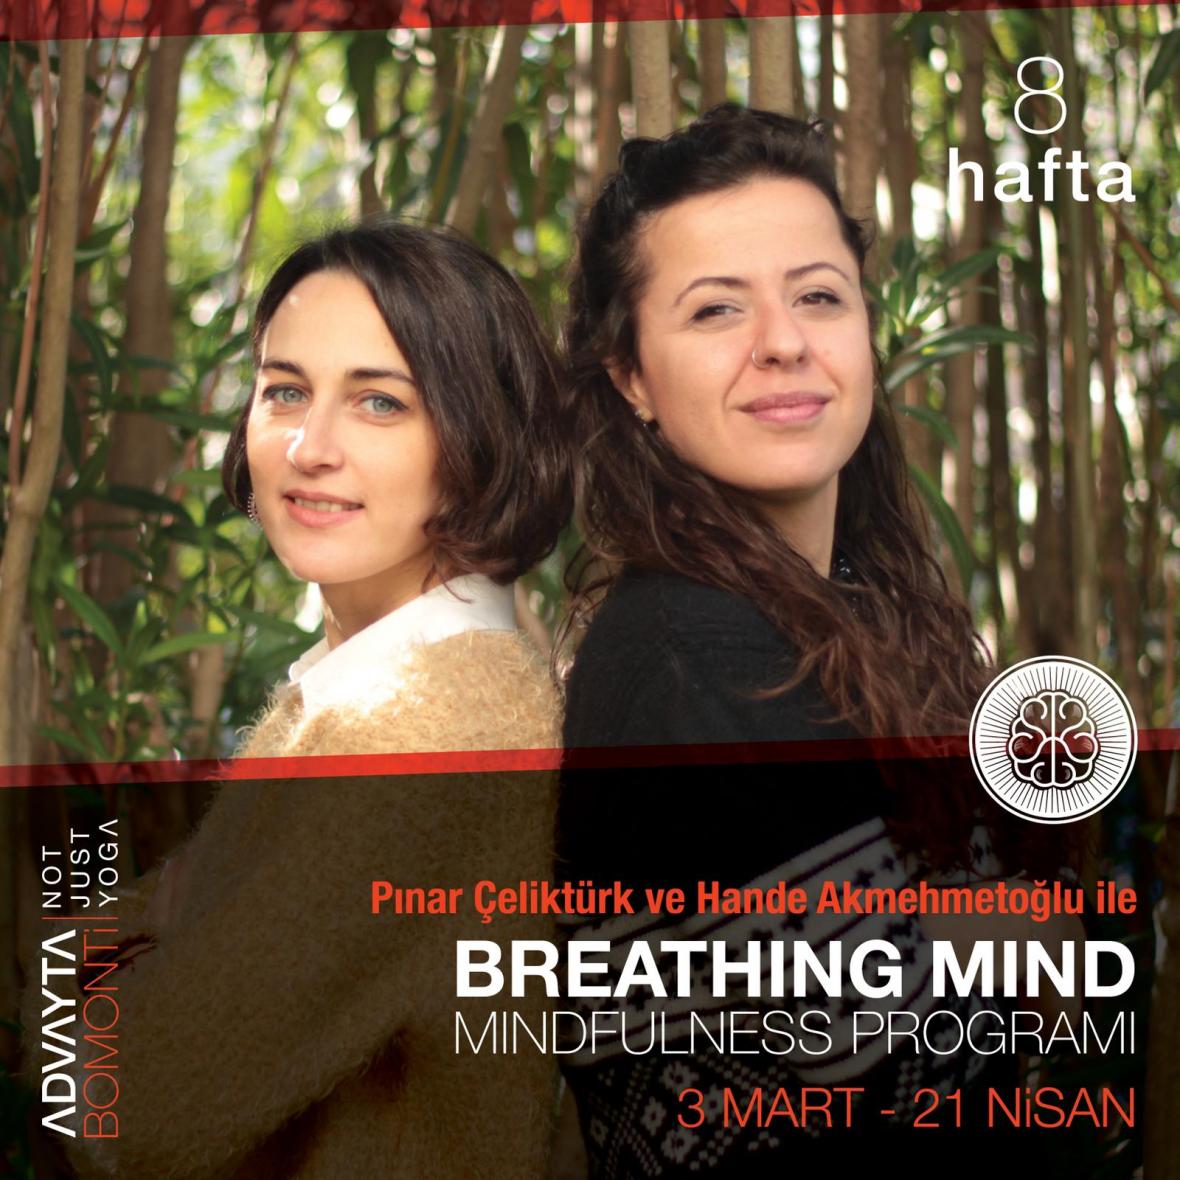 Pınar Çeliktürk ve Hande Akmehmetoğlu ile 8 Haftalık Mindfulness